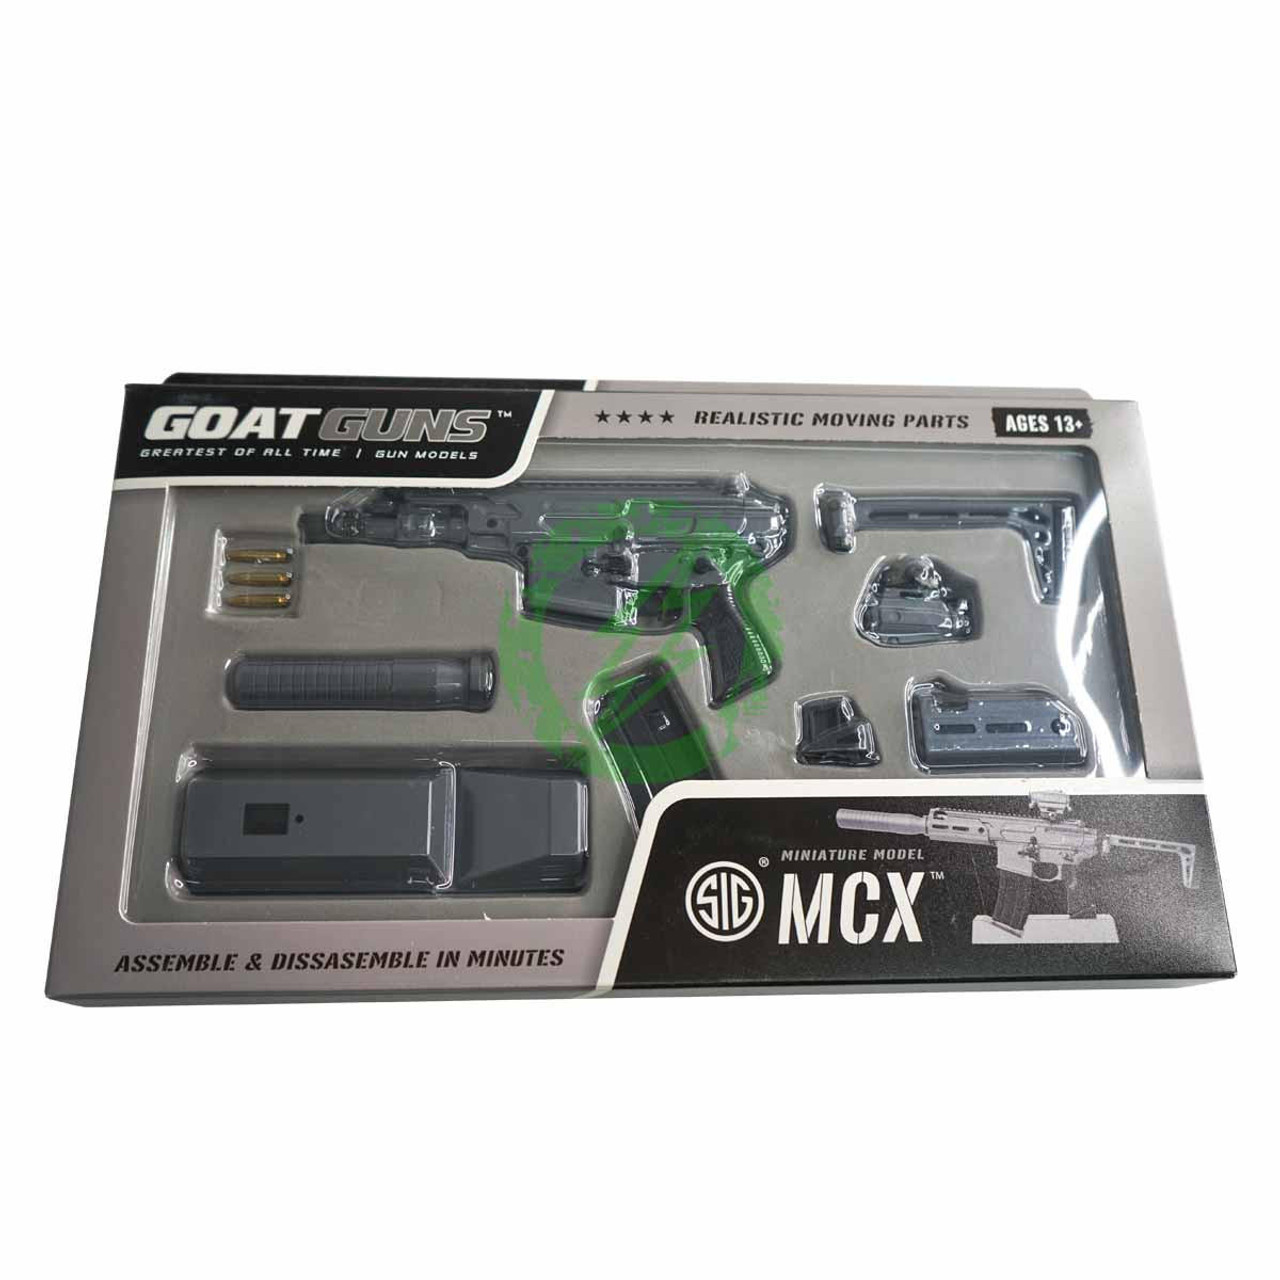  GOAT Guns Miniature Model Firearms Die Cast Metal Model 